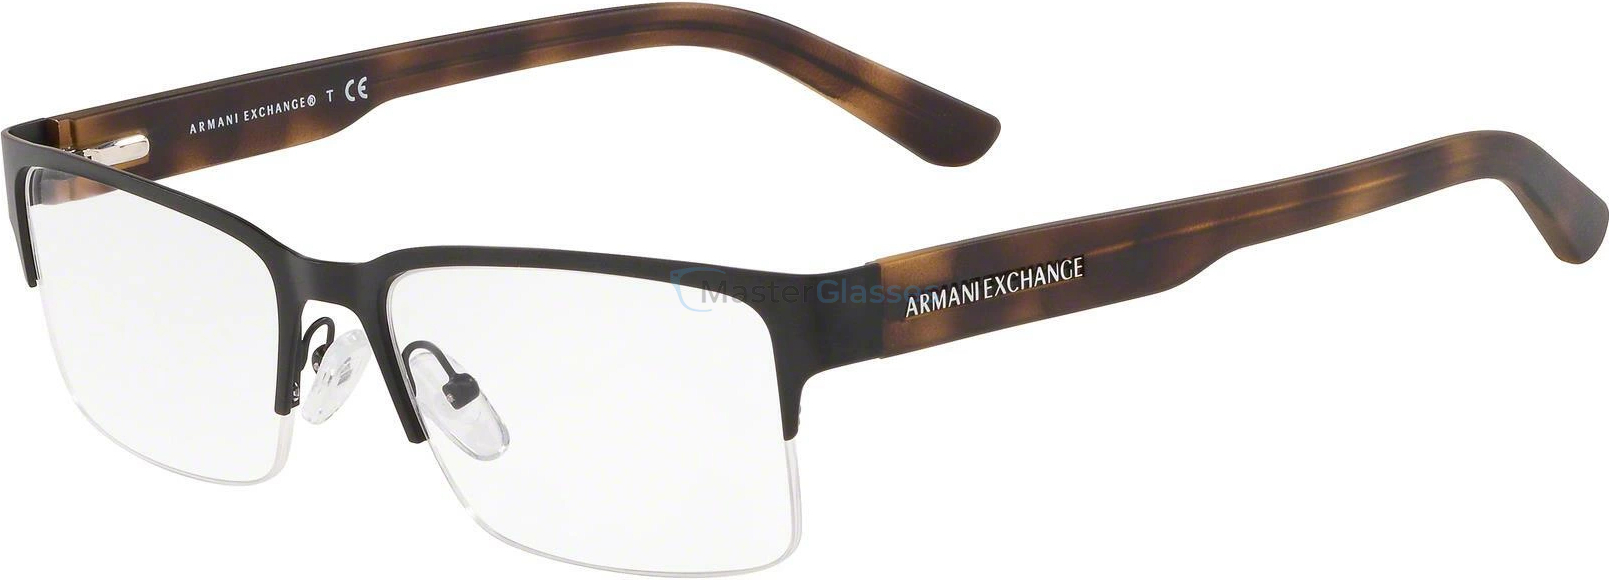  Armani exchange AX1014 6000 Matte Black